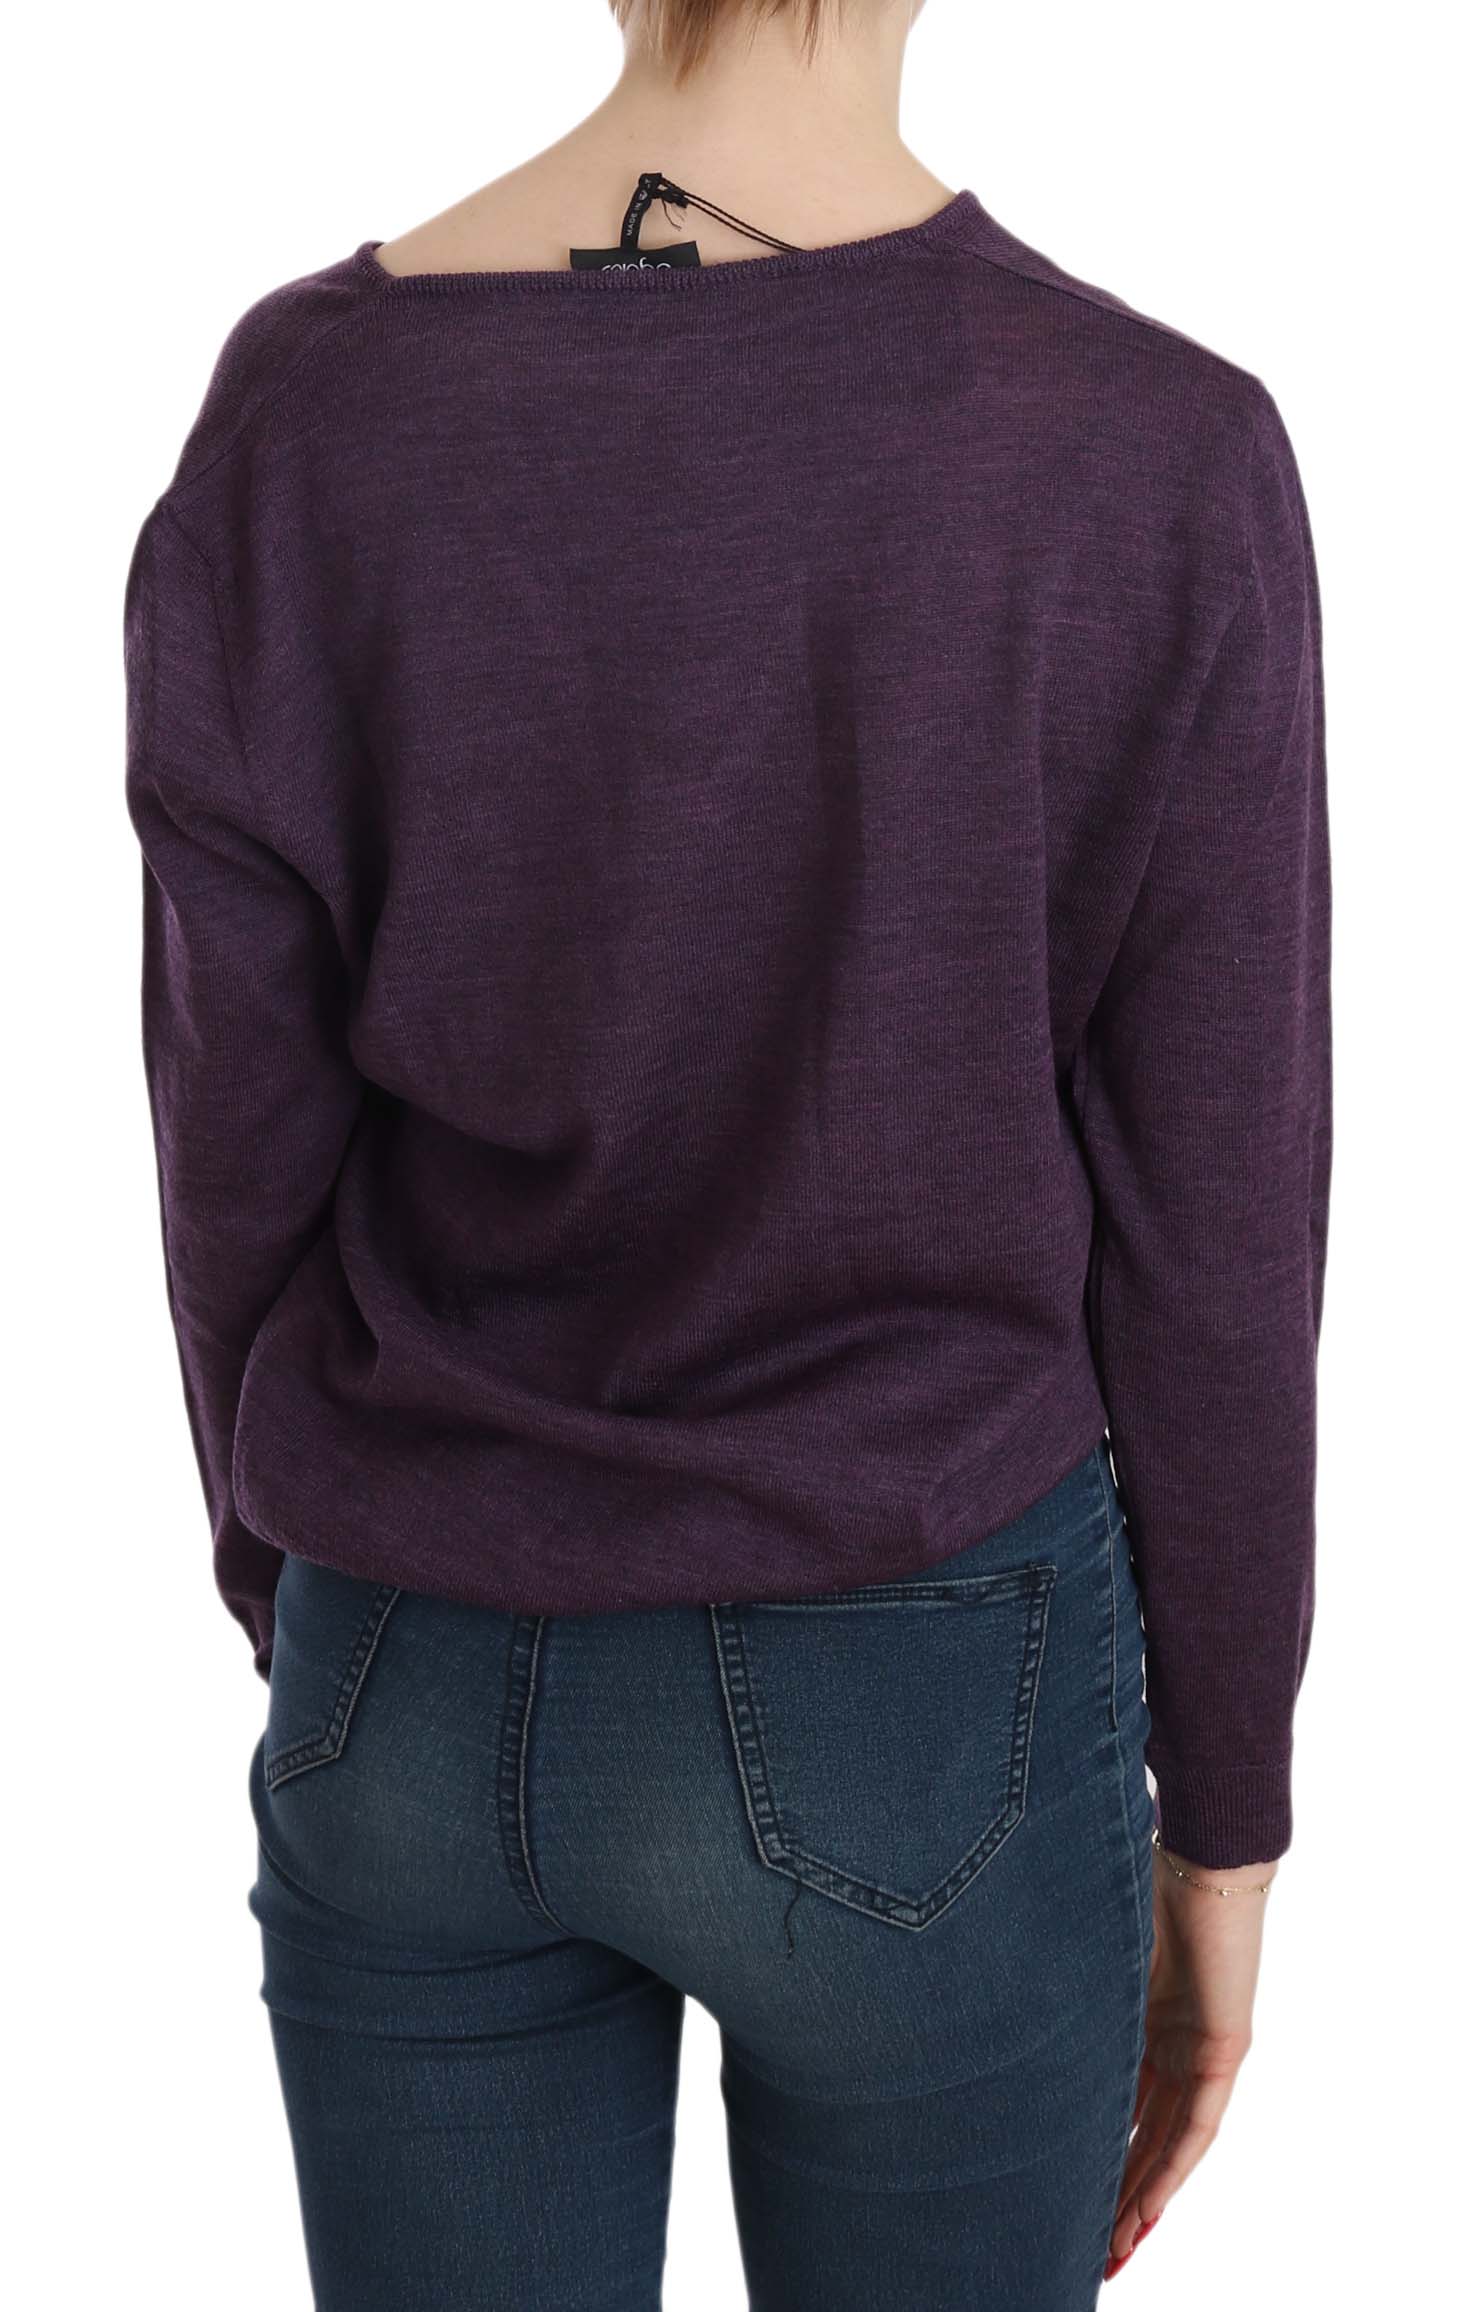 BYBLOS Purple V-neck Long Sleeve Pullover Top • Fashion Brands Outlet